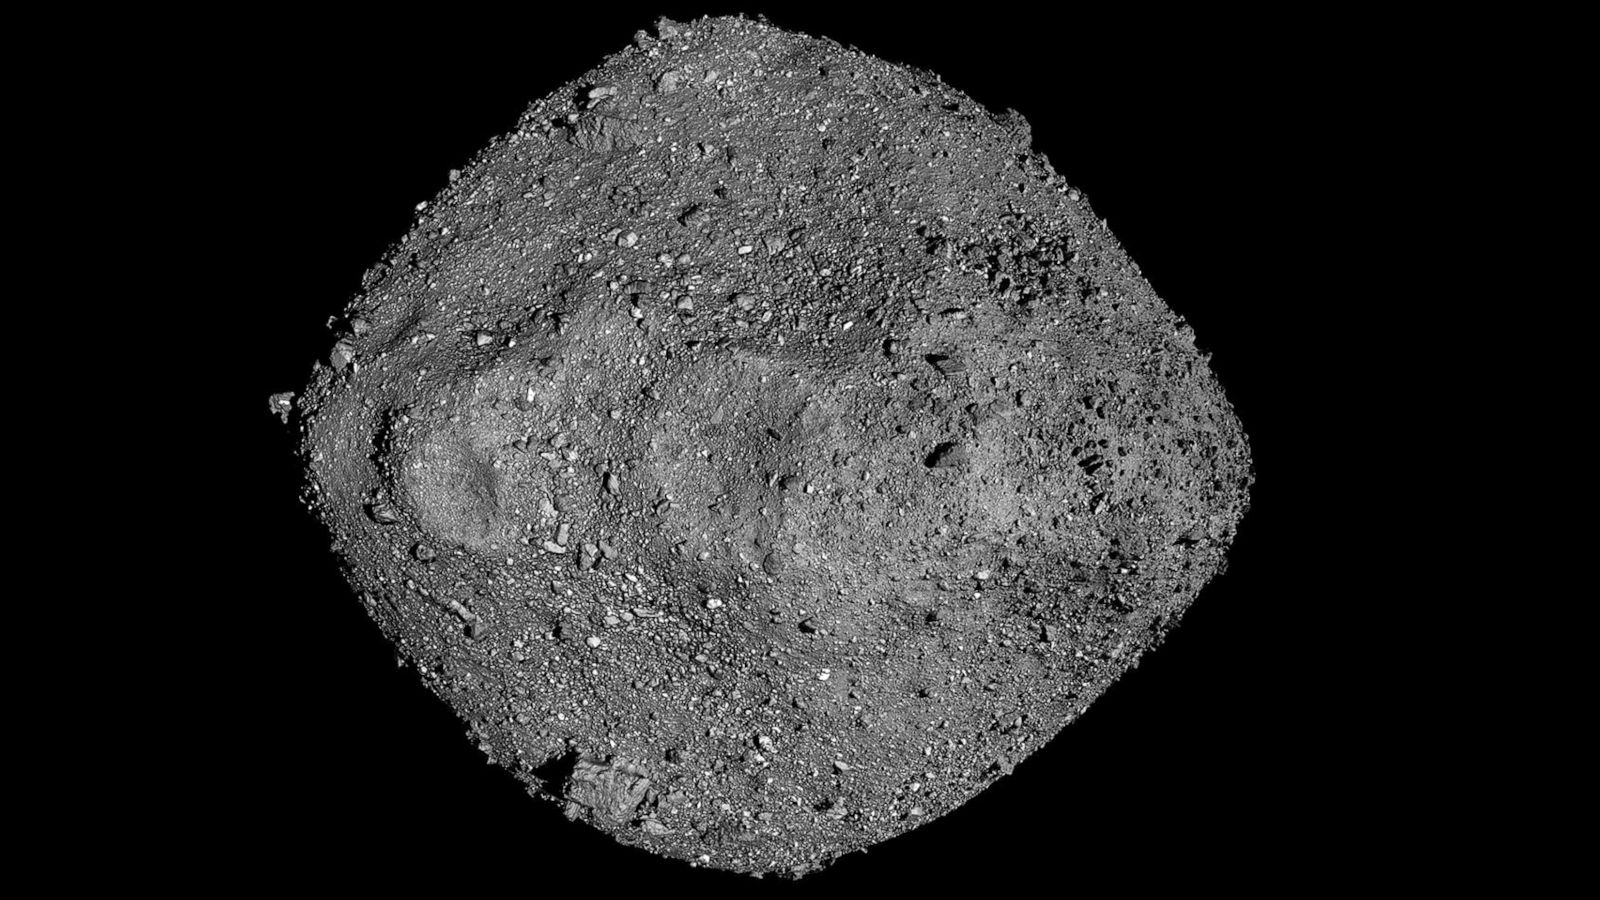 asteroid-bennu-1-ht-gmh-230905-1693946036603-hpmain-16x9-1600.jpg